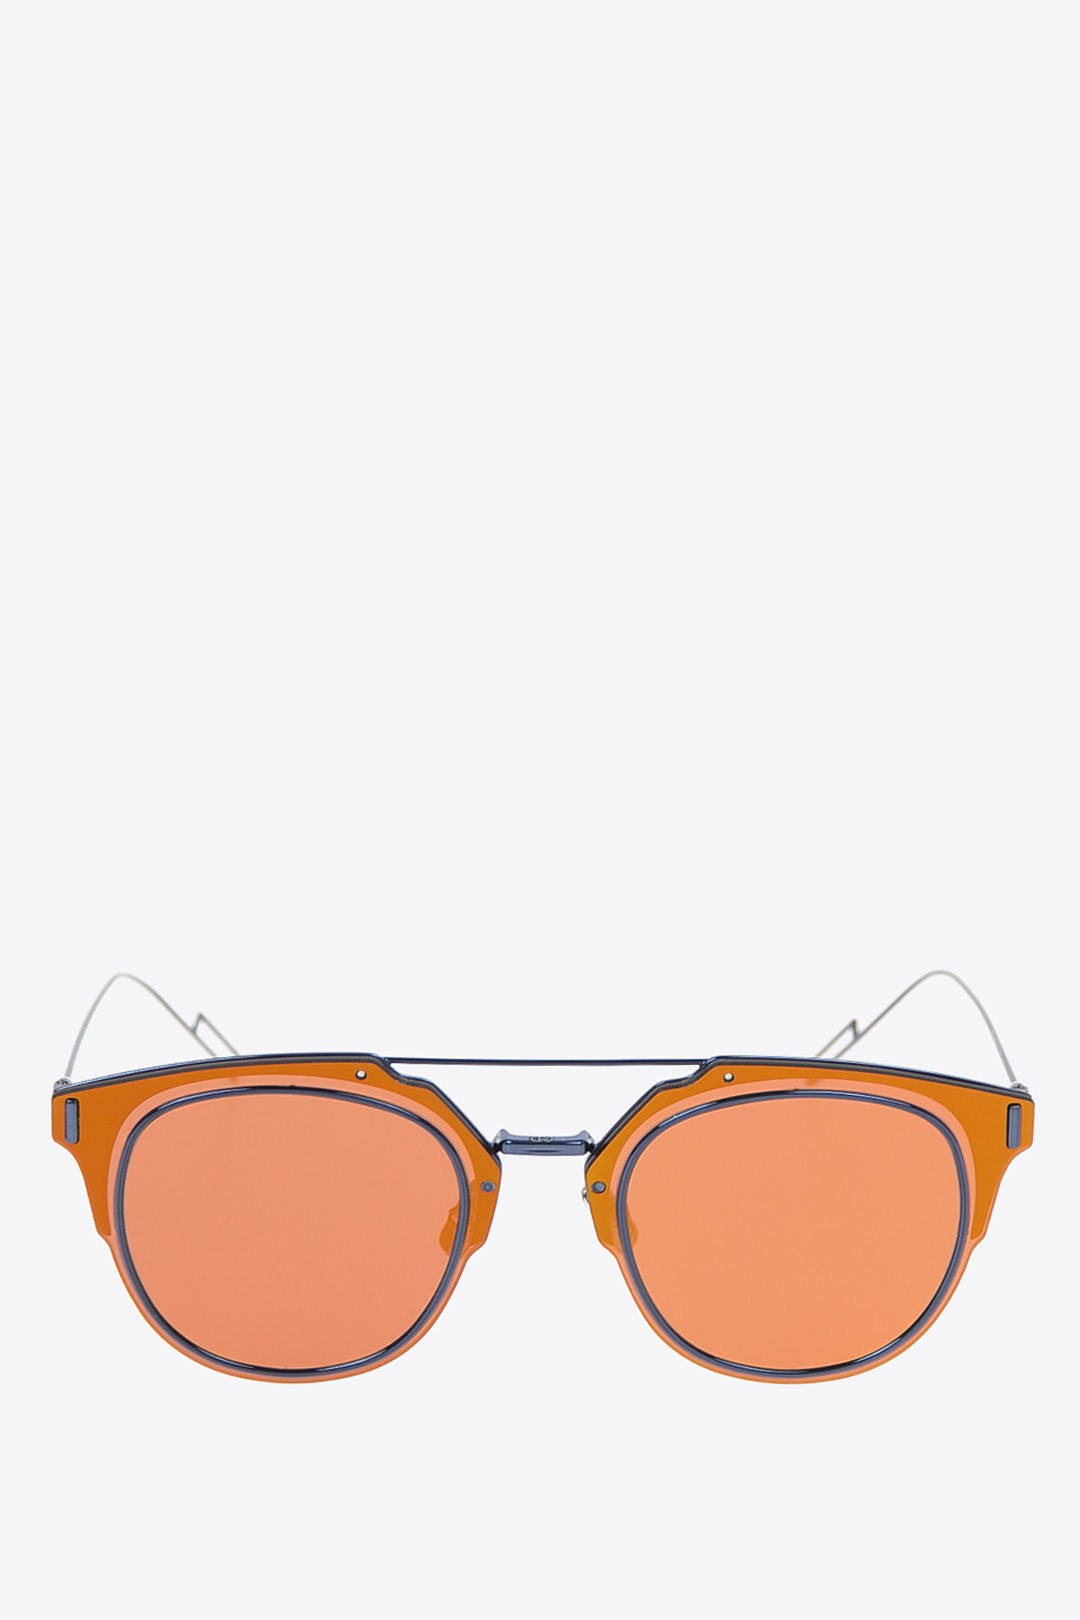 dior reflective sunglasses